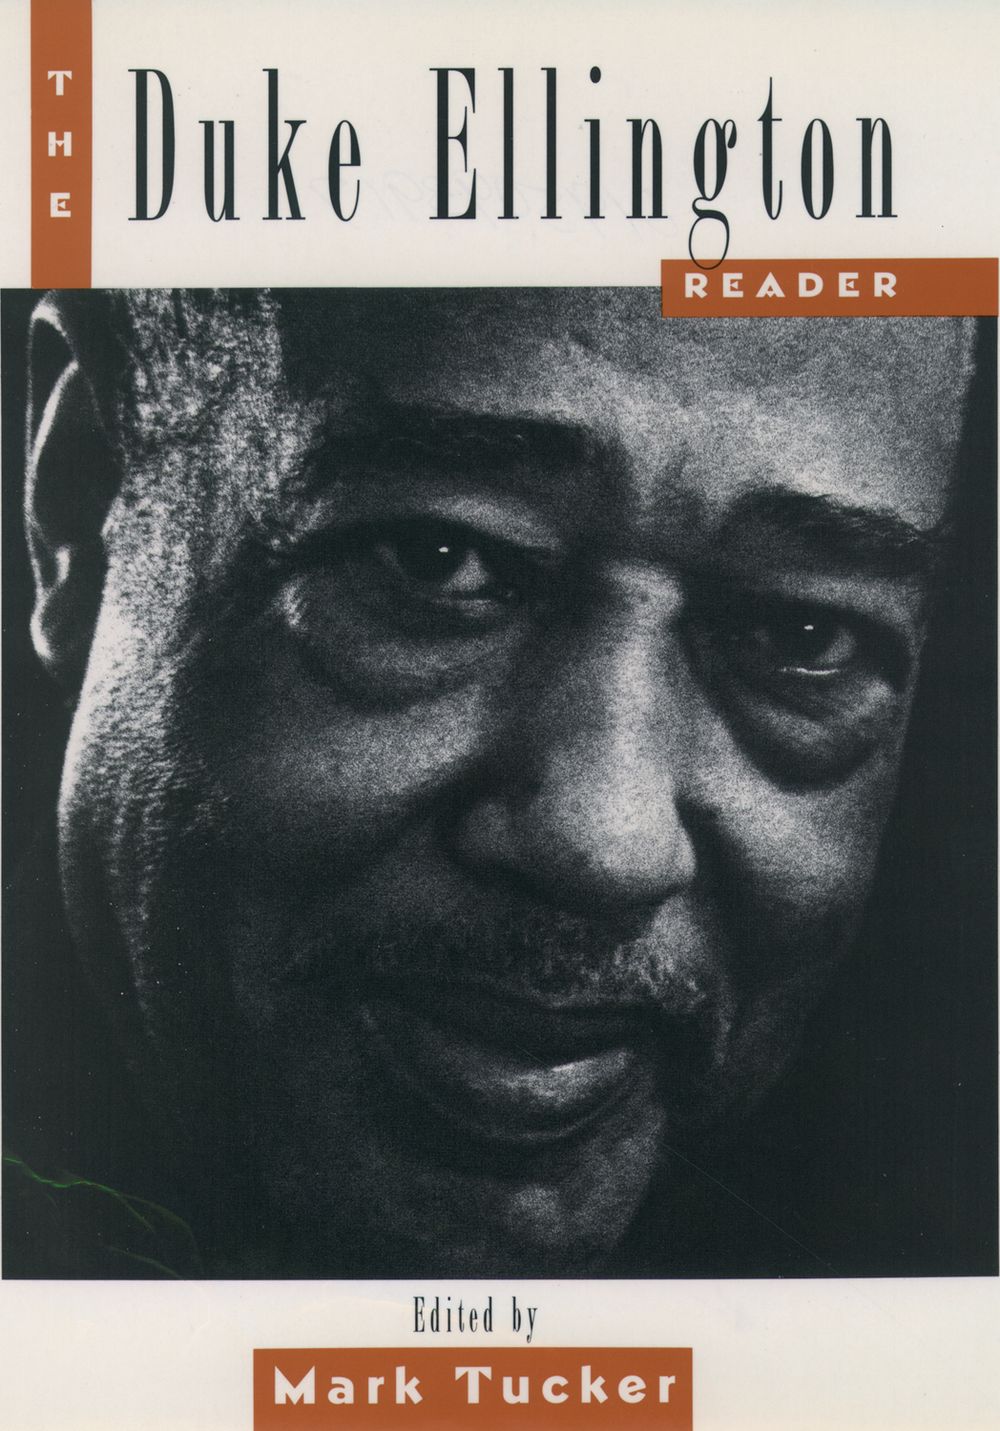 Duke Ellington Reader Ed. Tucker Paperback Sheet Music Songbook